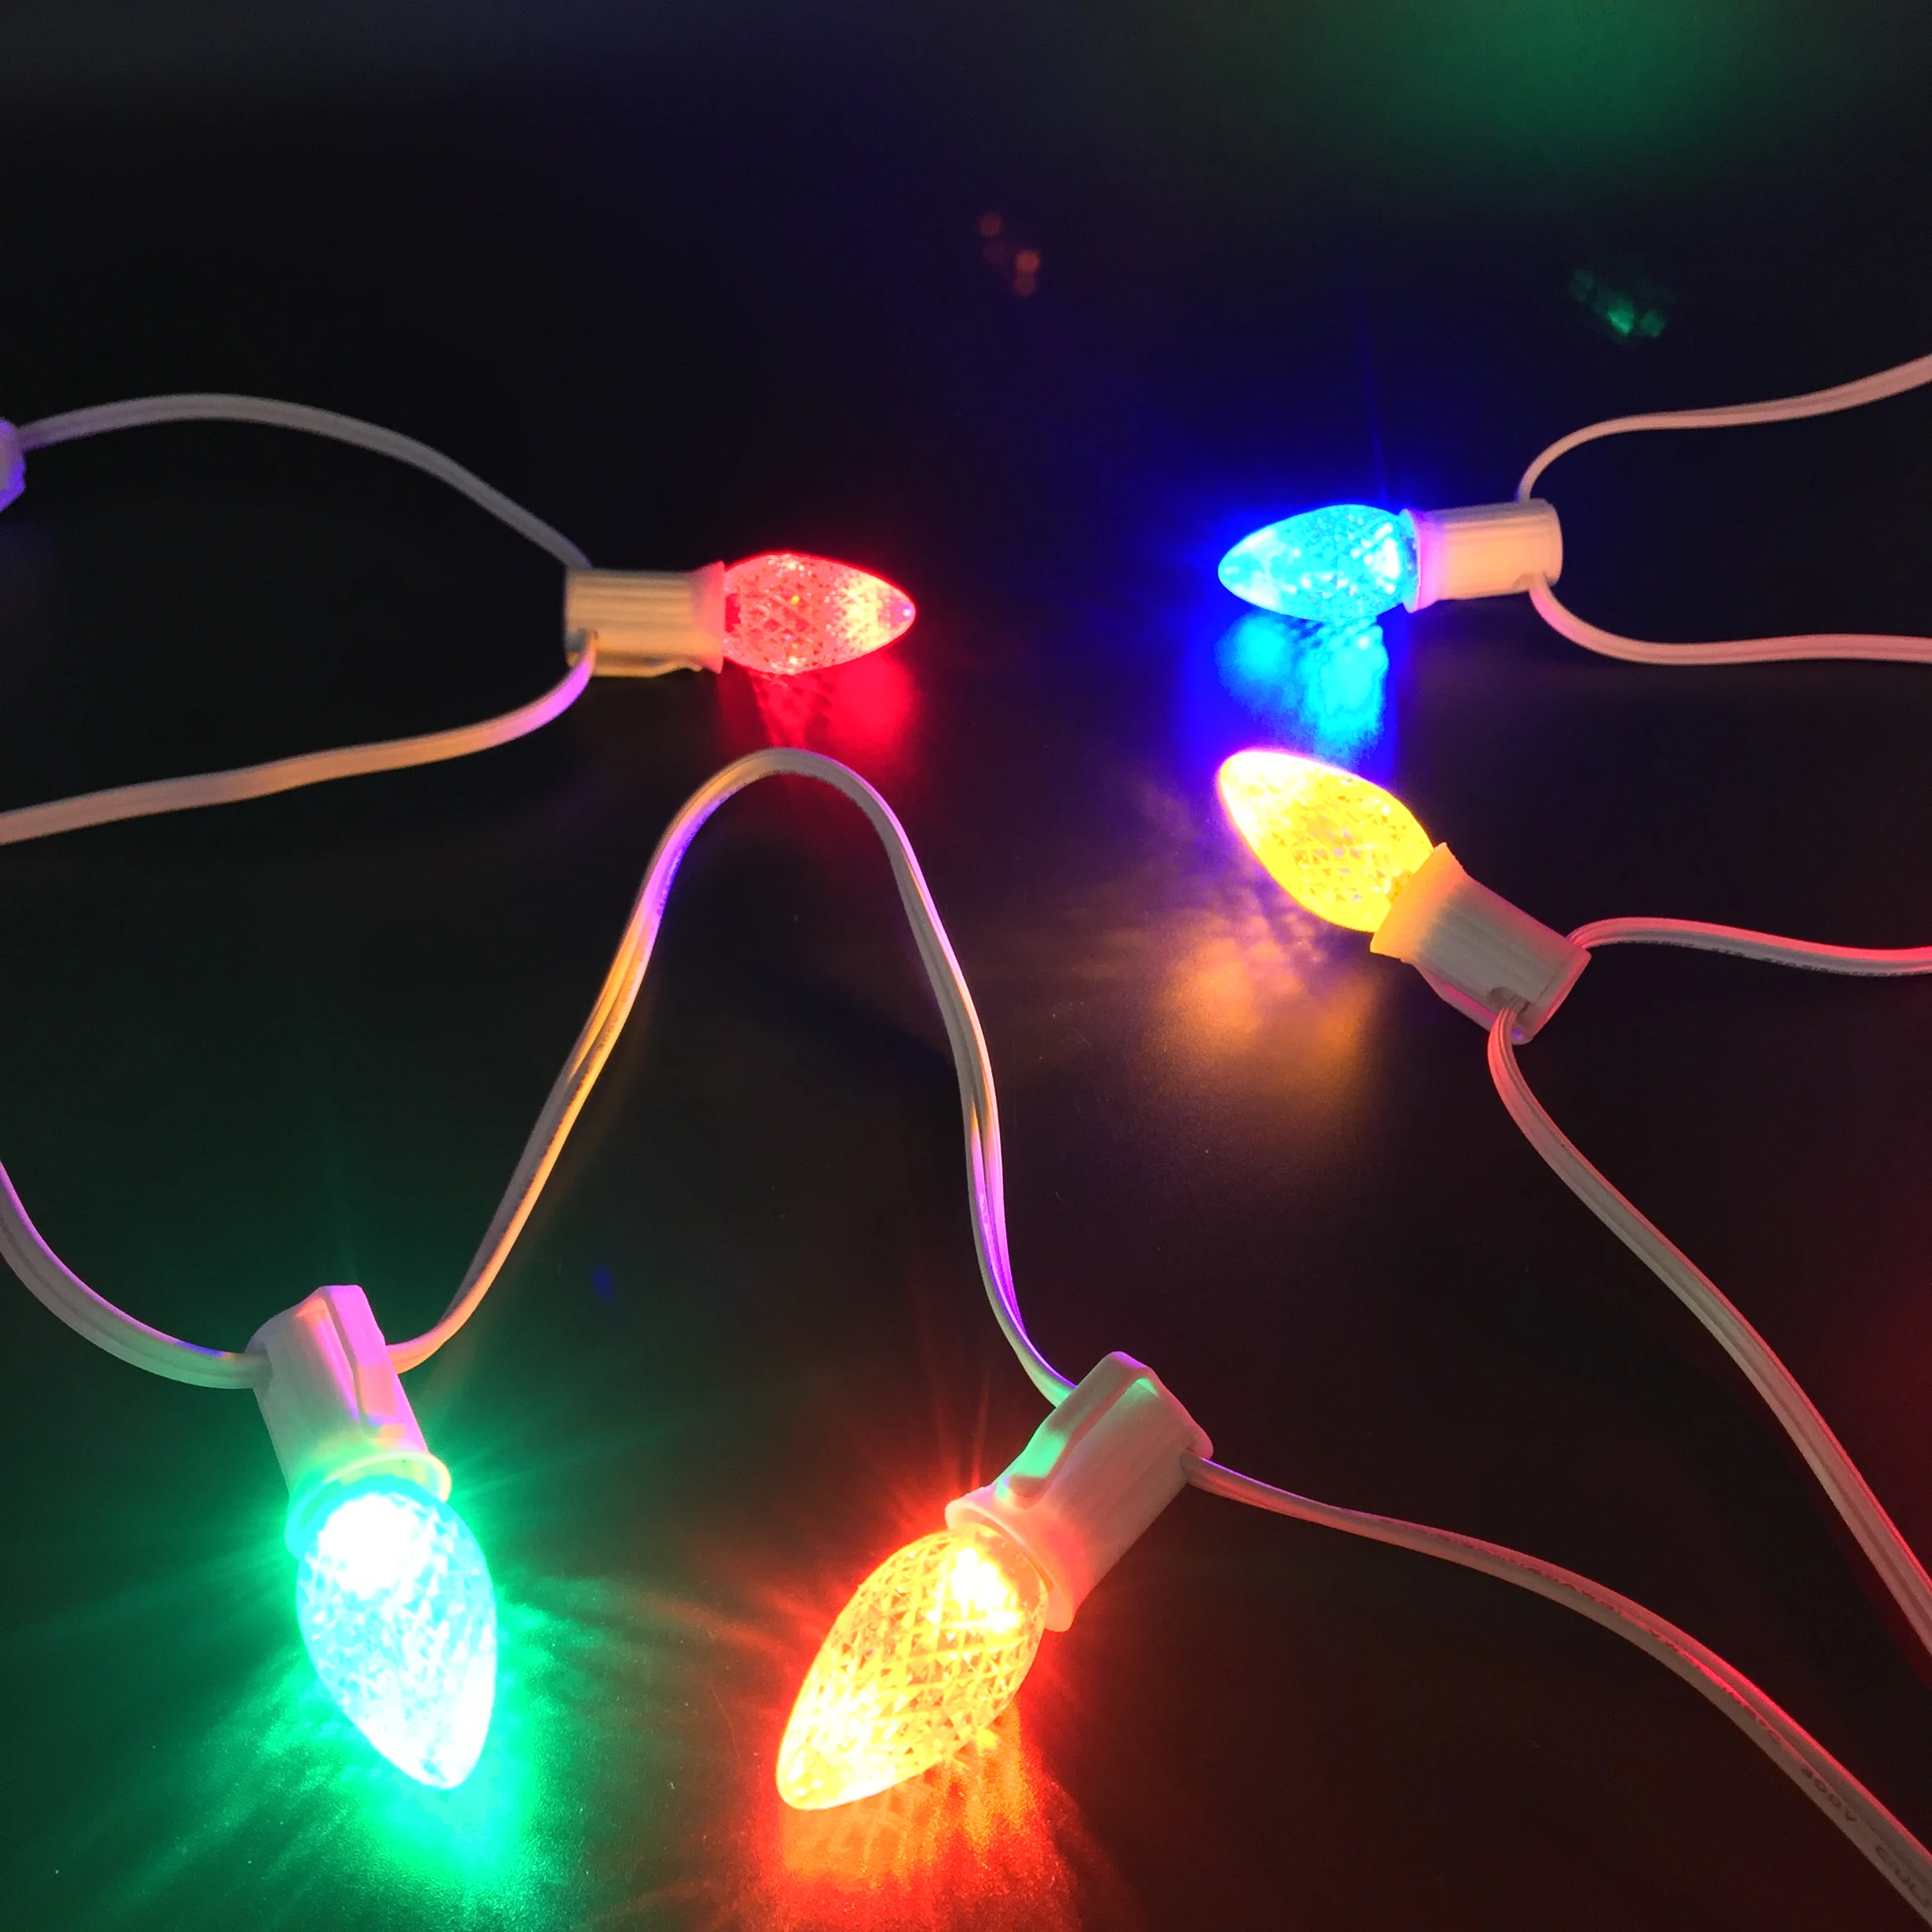 UL Listed 25 Pack C7 светодиодный сменный лампочка, 2 SMD СВЕТОДИОДНЫЙ s в каждой Рождественская лампа для наружных струнных ламп, многоцветный